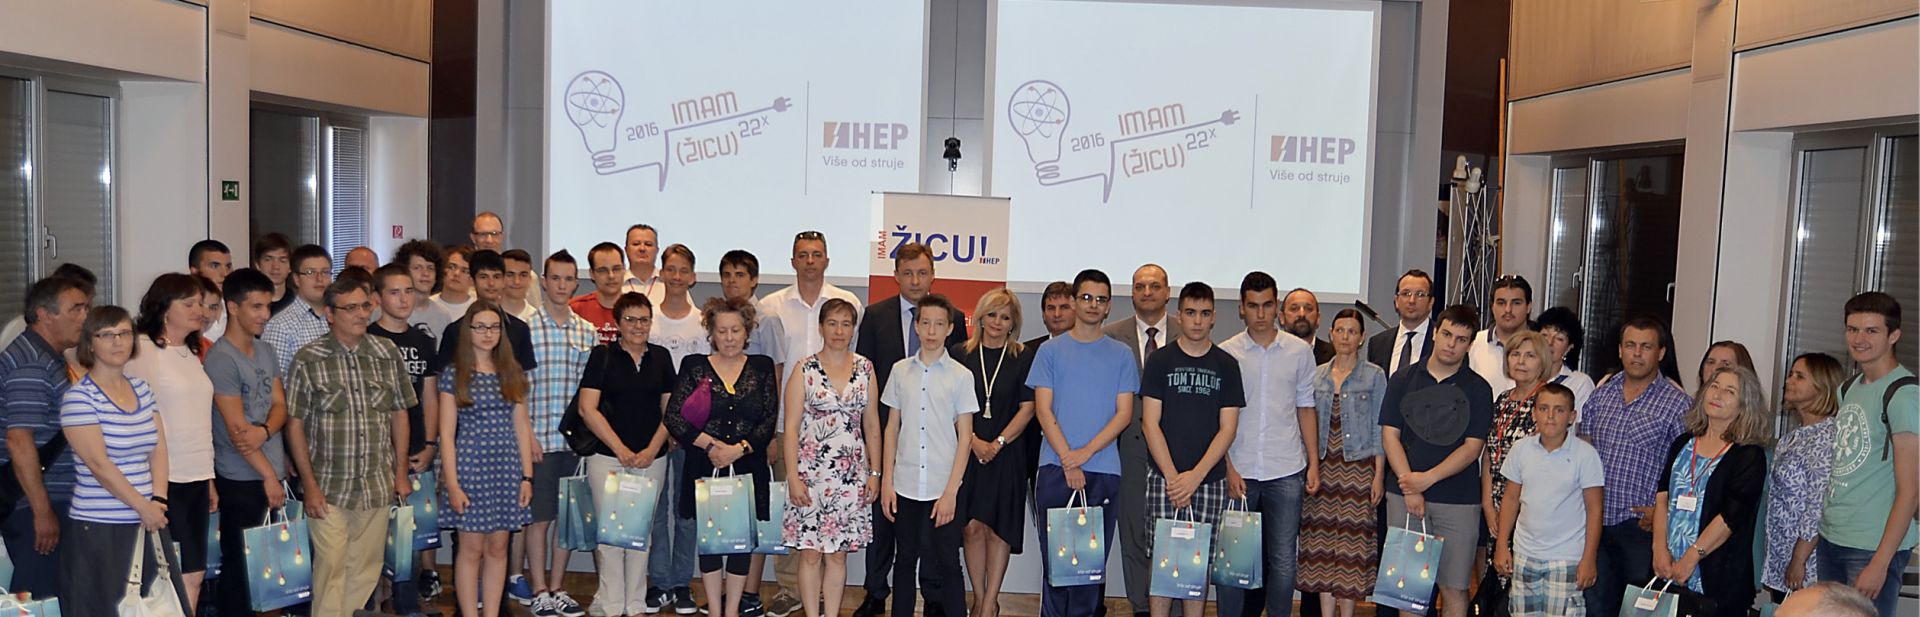 Održana svečanost 22. dodjele HEP-ove Nagrade učenicima IMAM ŽICU!